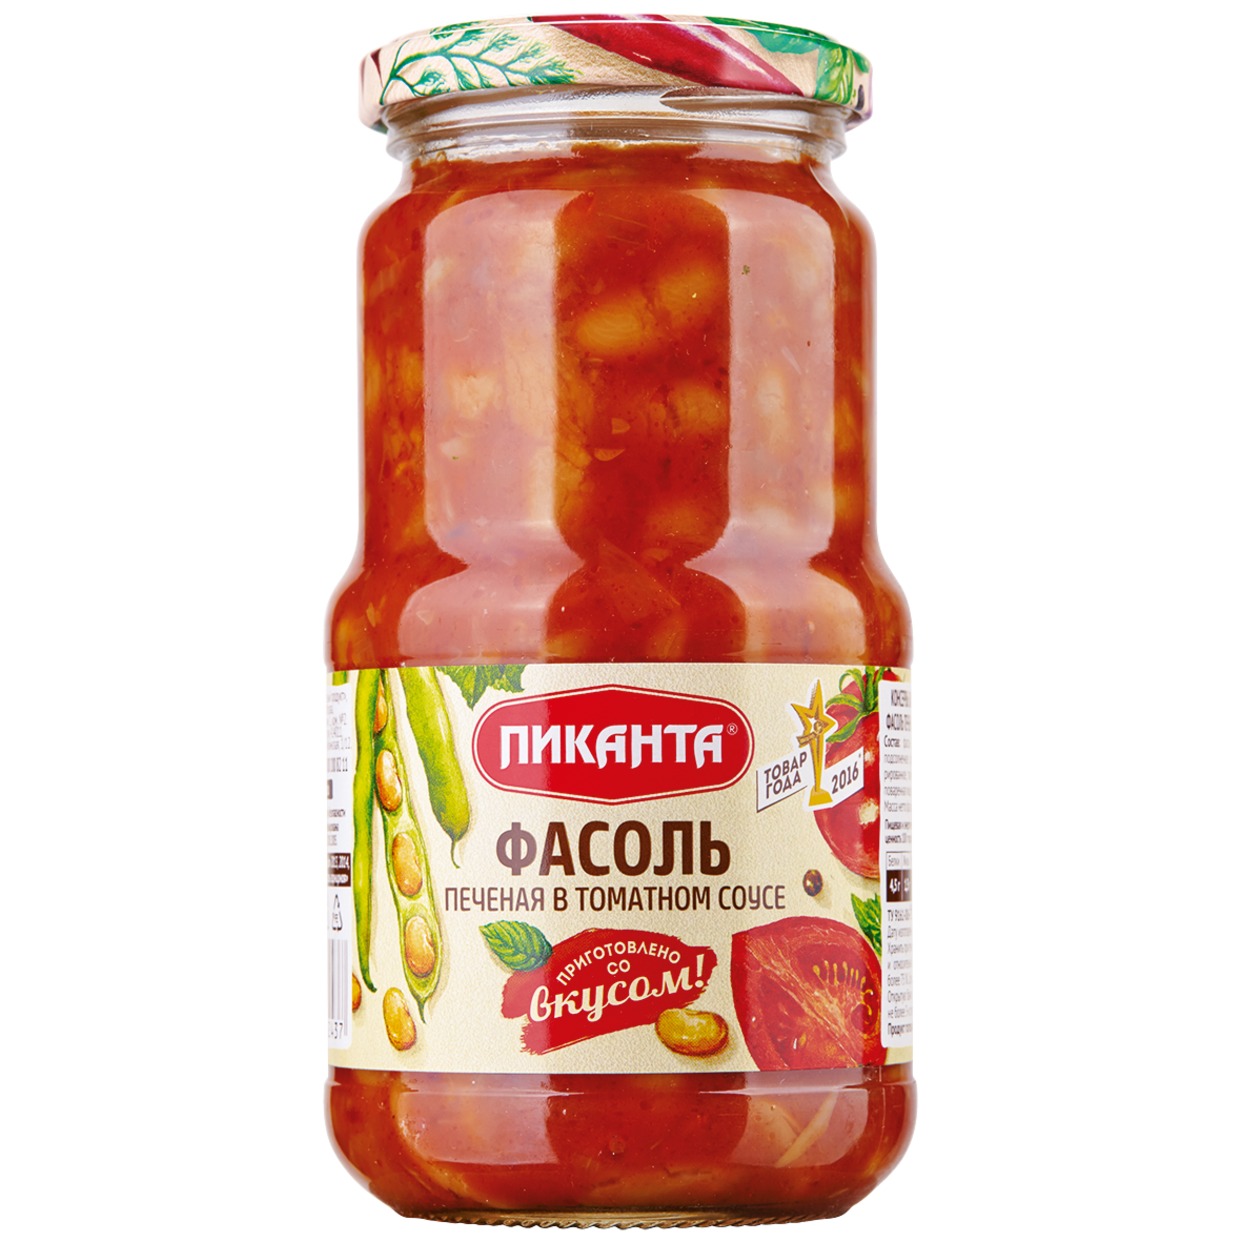 Фасоль печеная в томатном соусе, Пиканта, 530 г по акции в Пятерочке